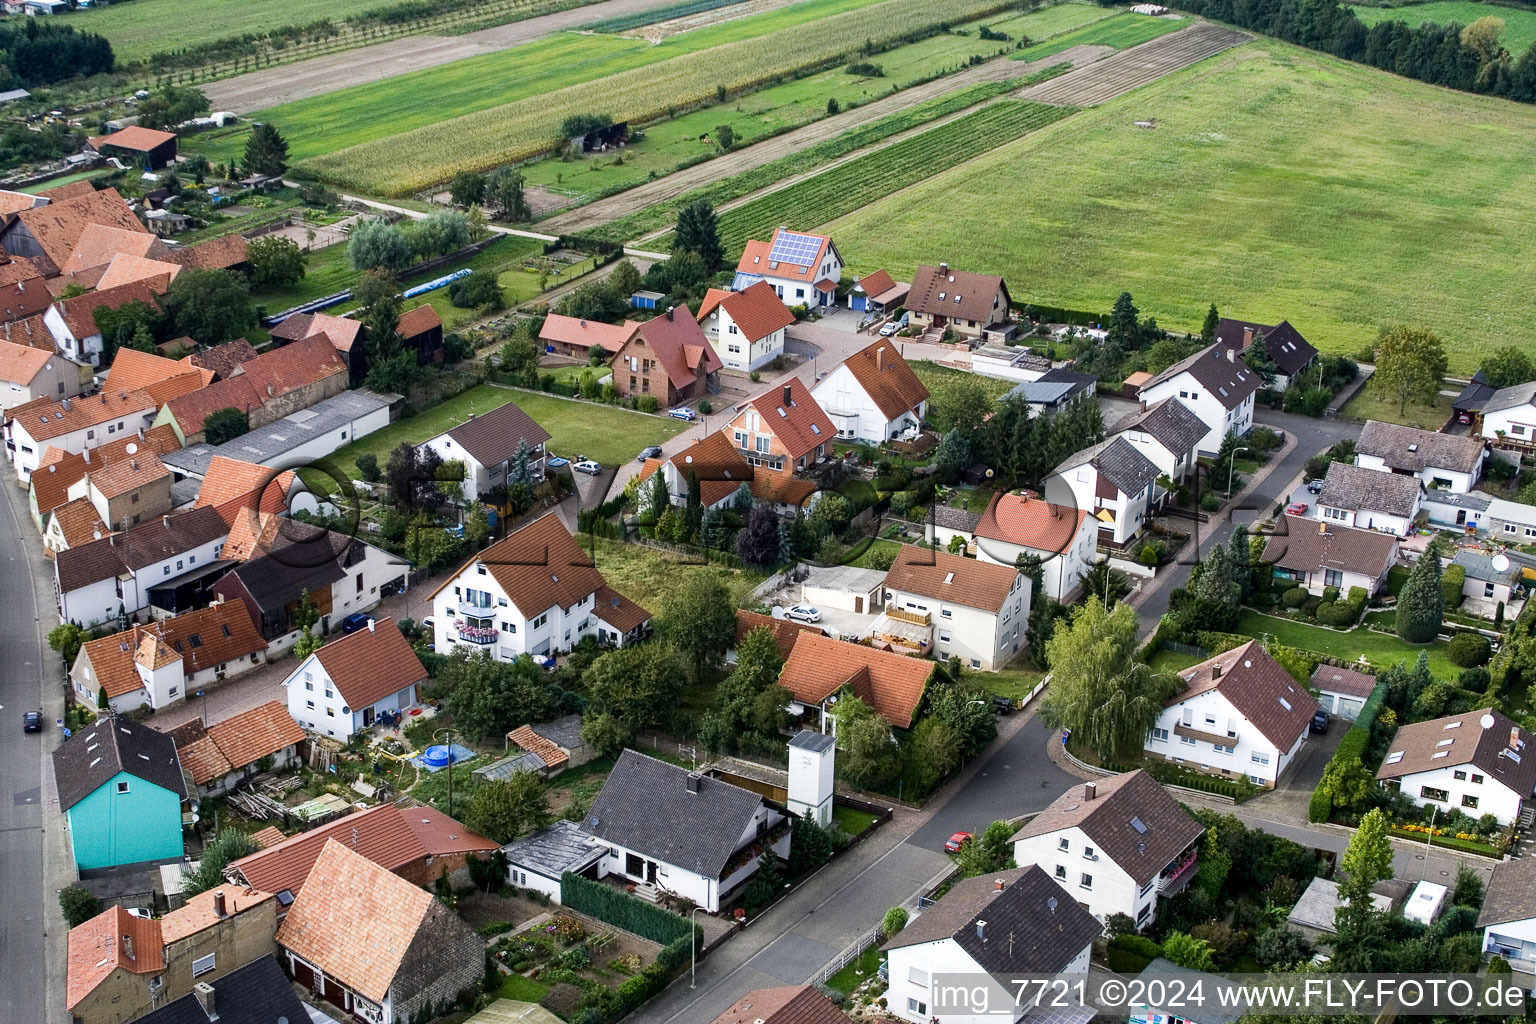 Erlenbach bei Kandel im Bundesland Rheinland-Pfalz, Deutschland von der Drohne aus gesehen